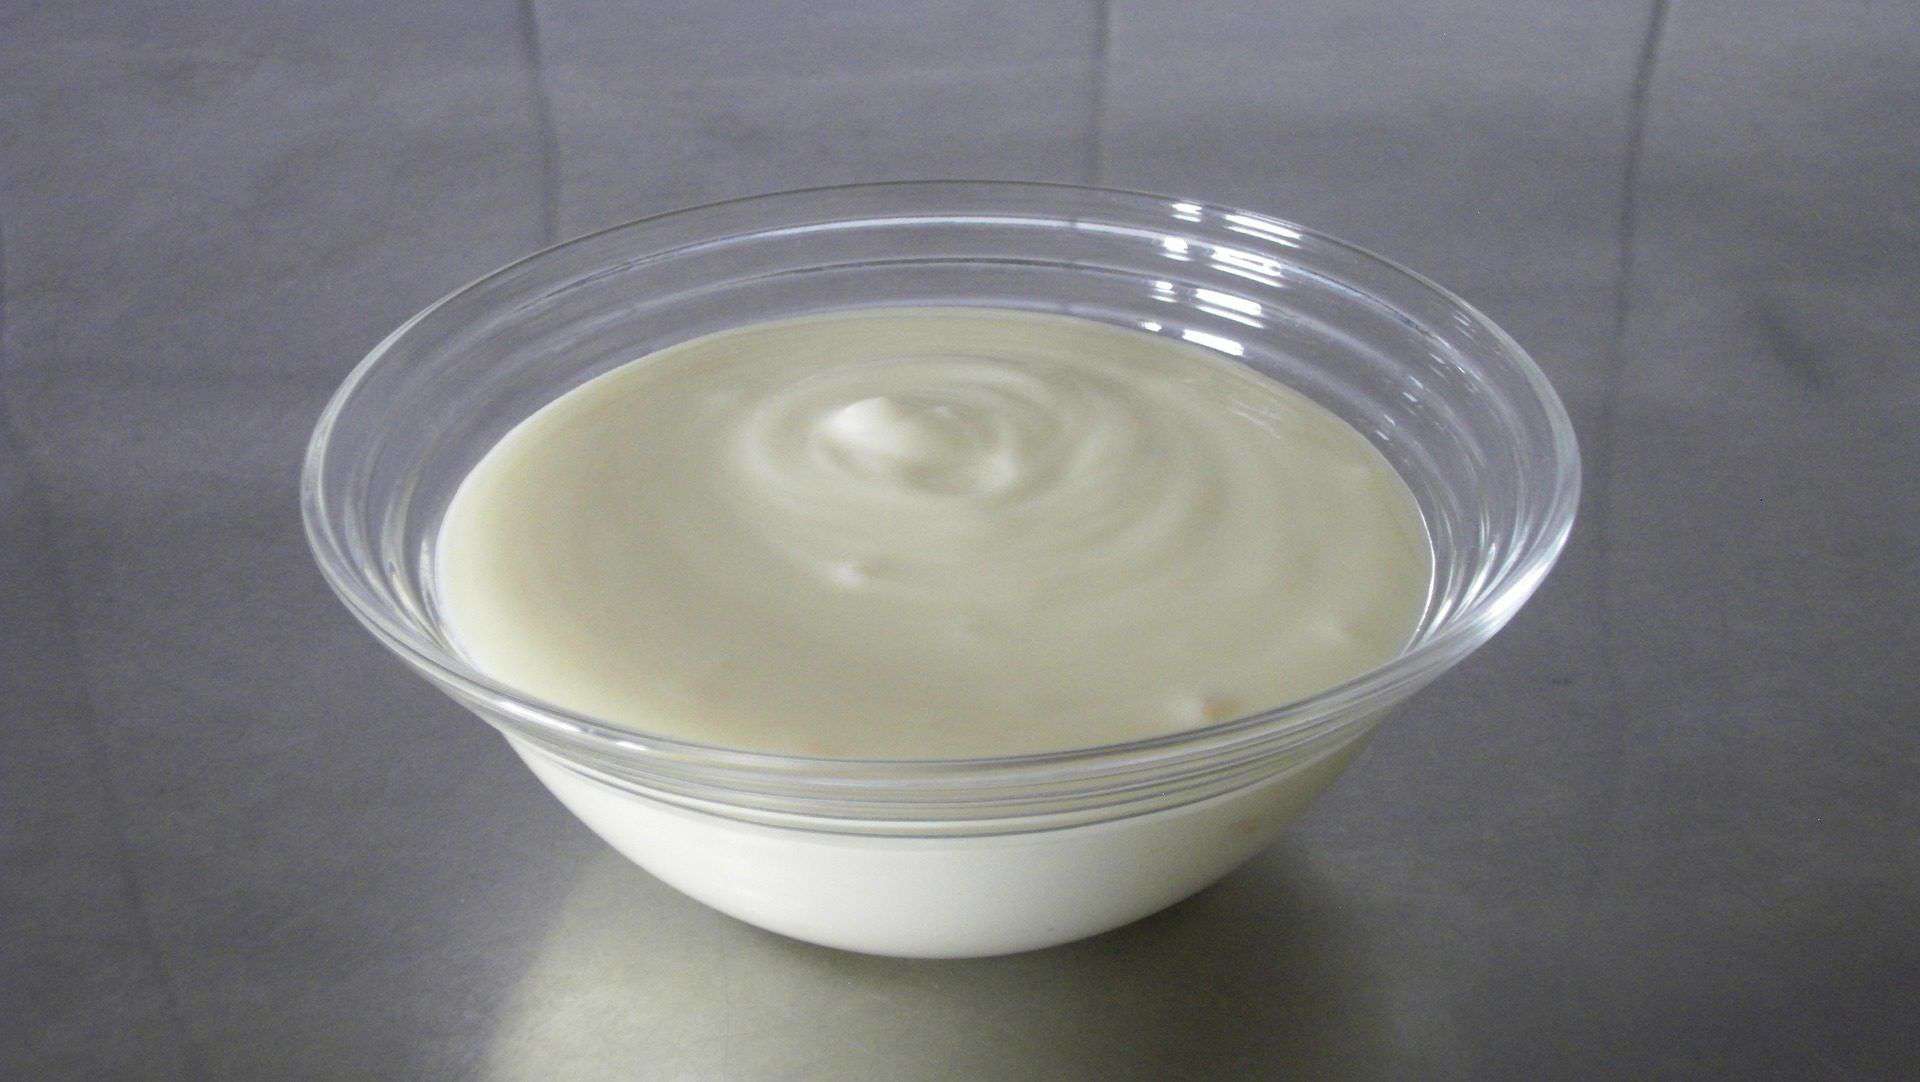 Plain Yogurt